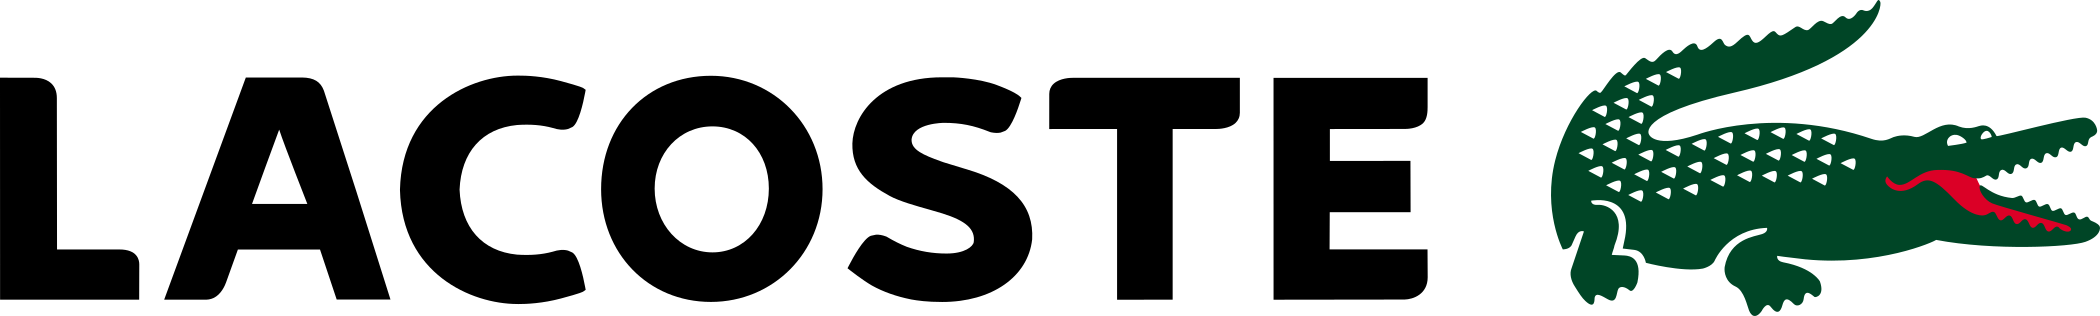 lacoste logo 3 - Lacoste Logo